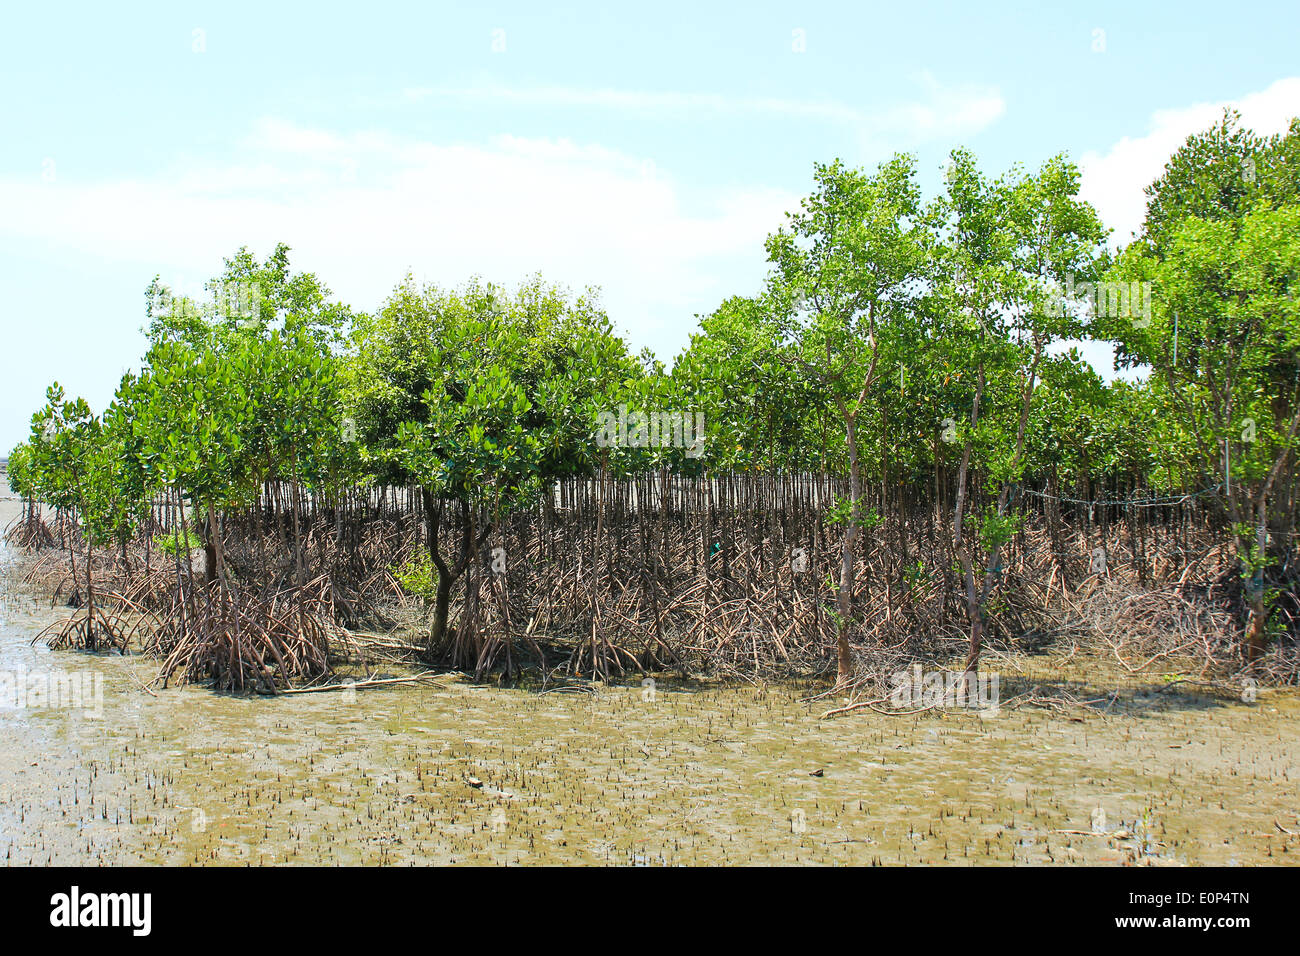 Mangrove plant in sea shore Stock Photo